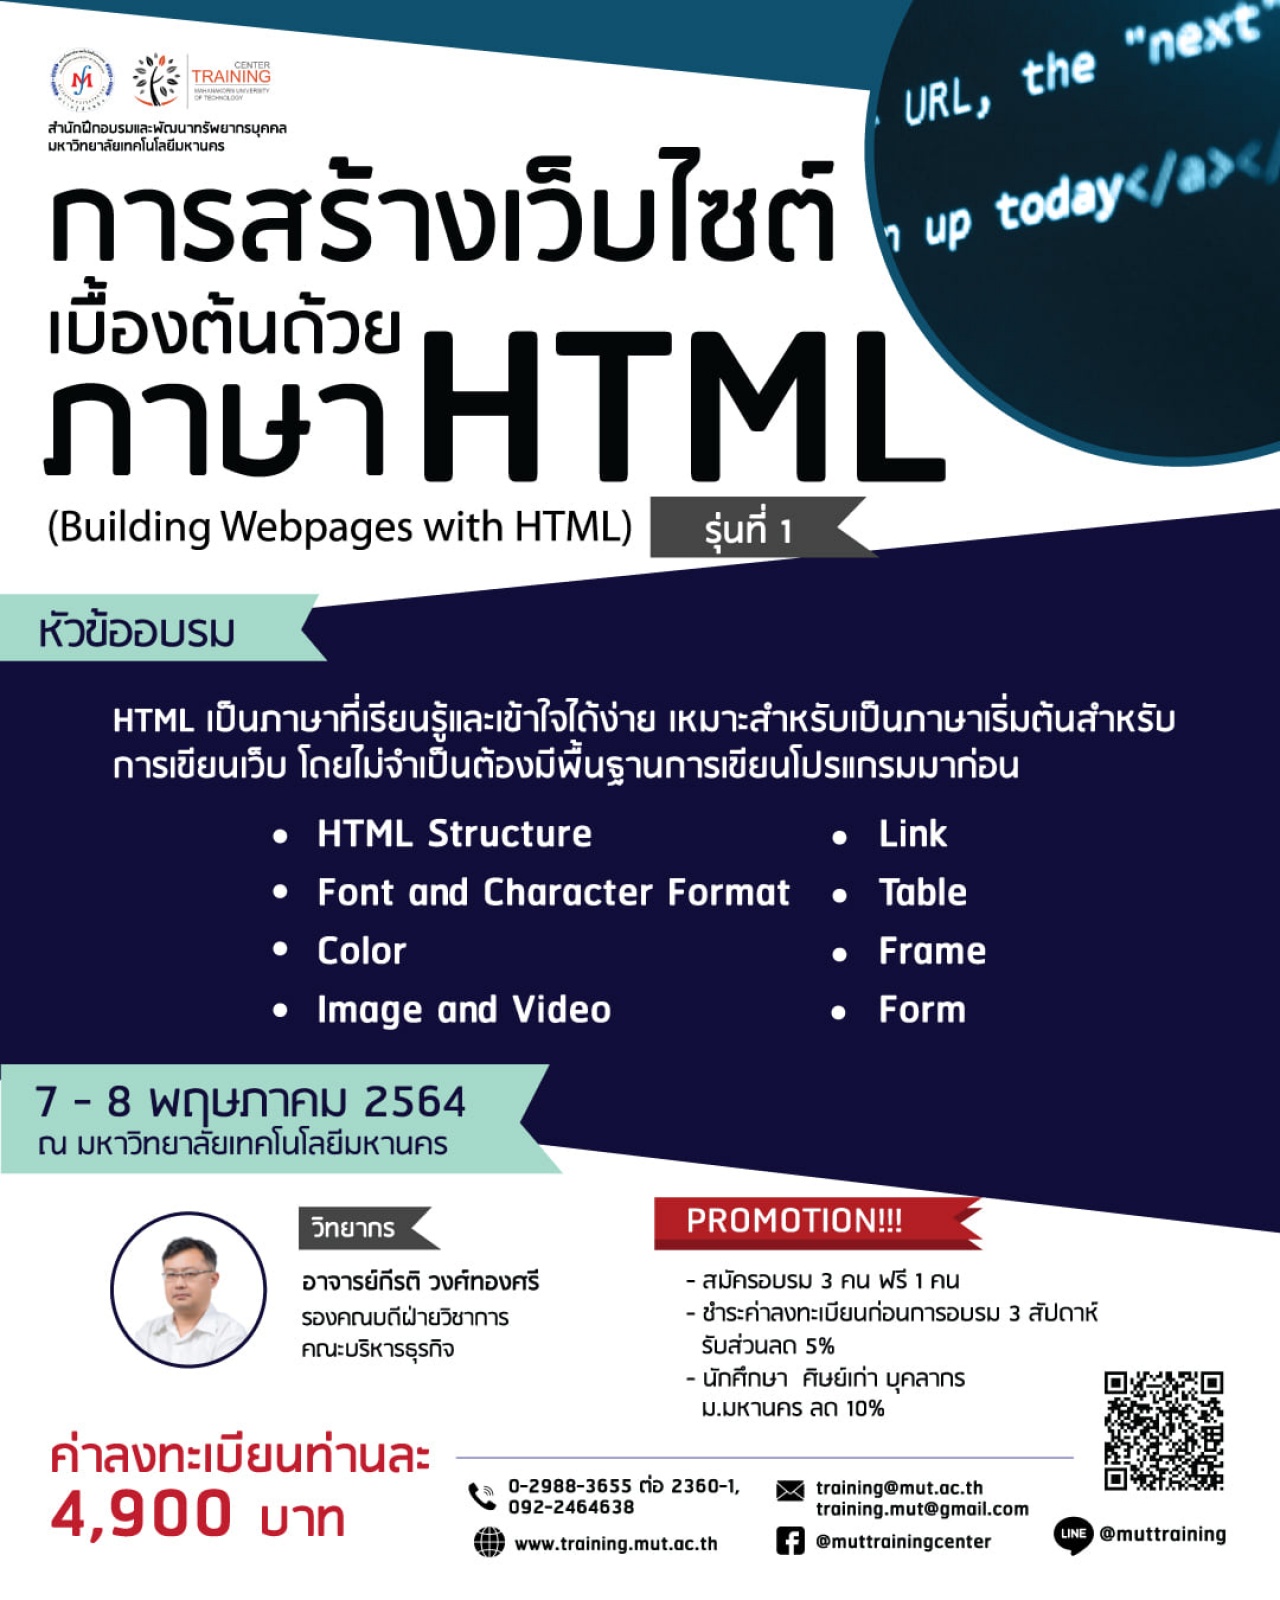 โครงการอบรม การสร้างเว็บไซต์เบื้องต้นด้วยภาษา HTML (Building Webpages with HTML) รุ่นที่ 1